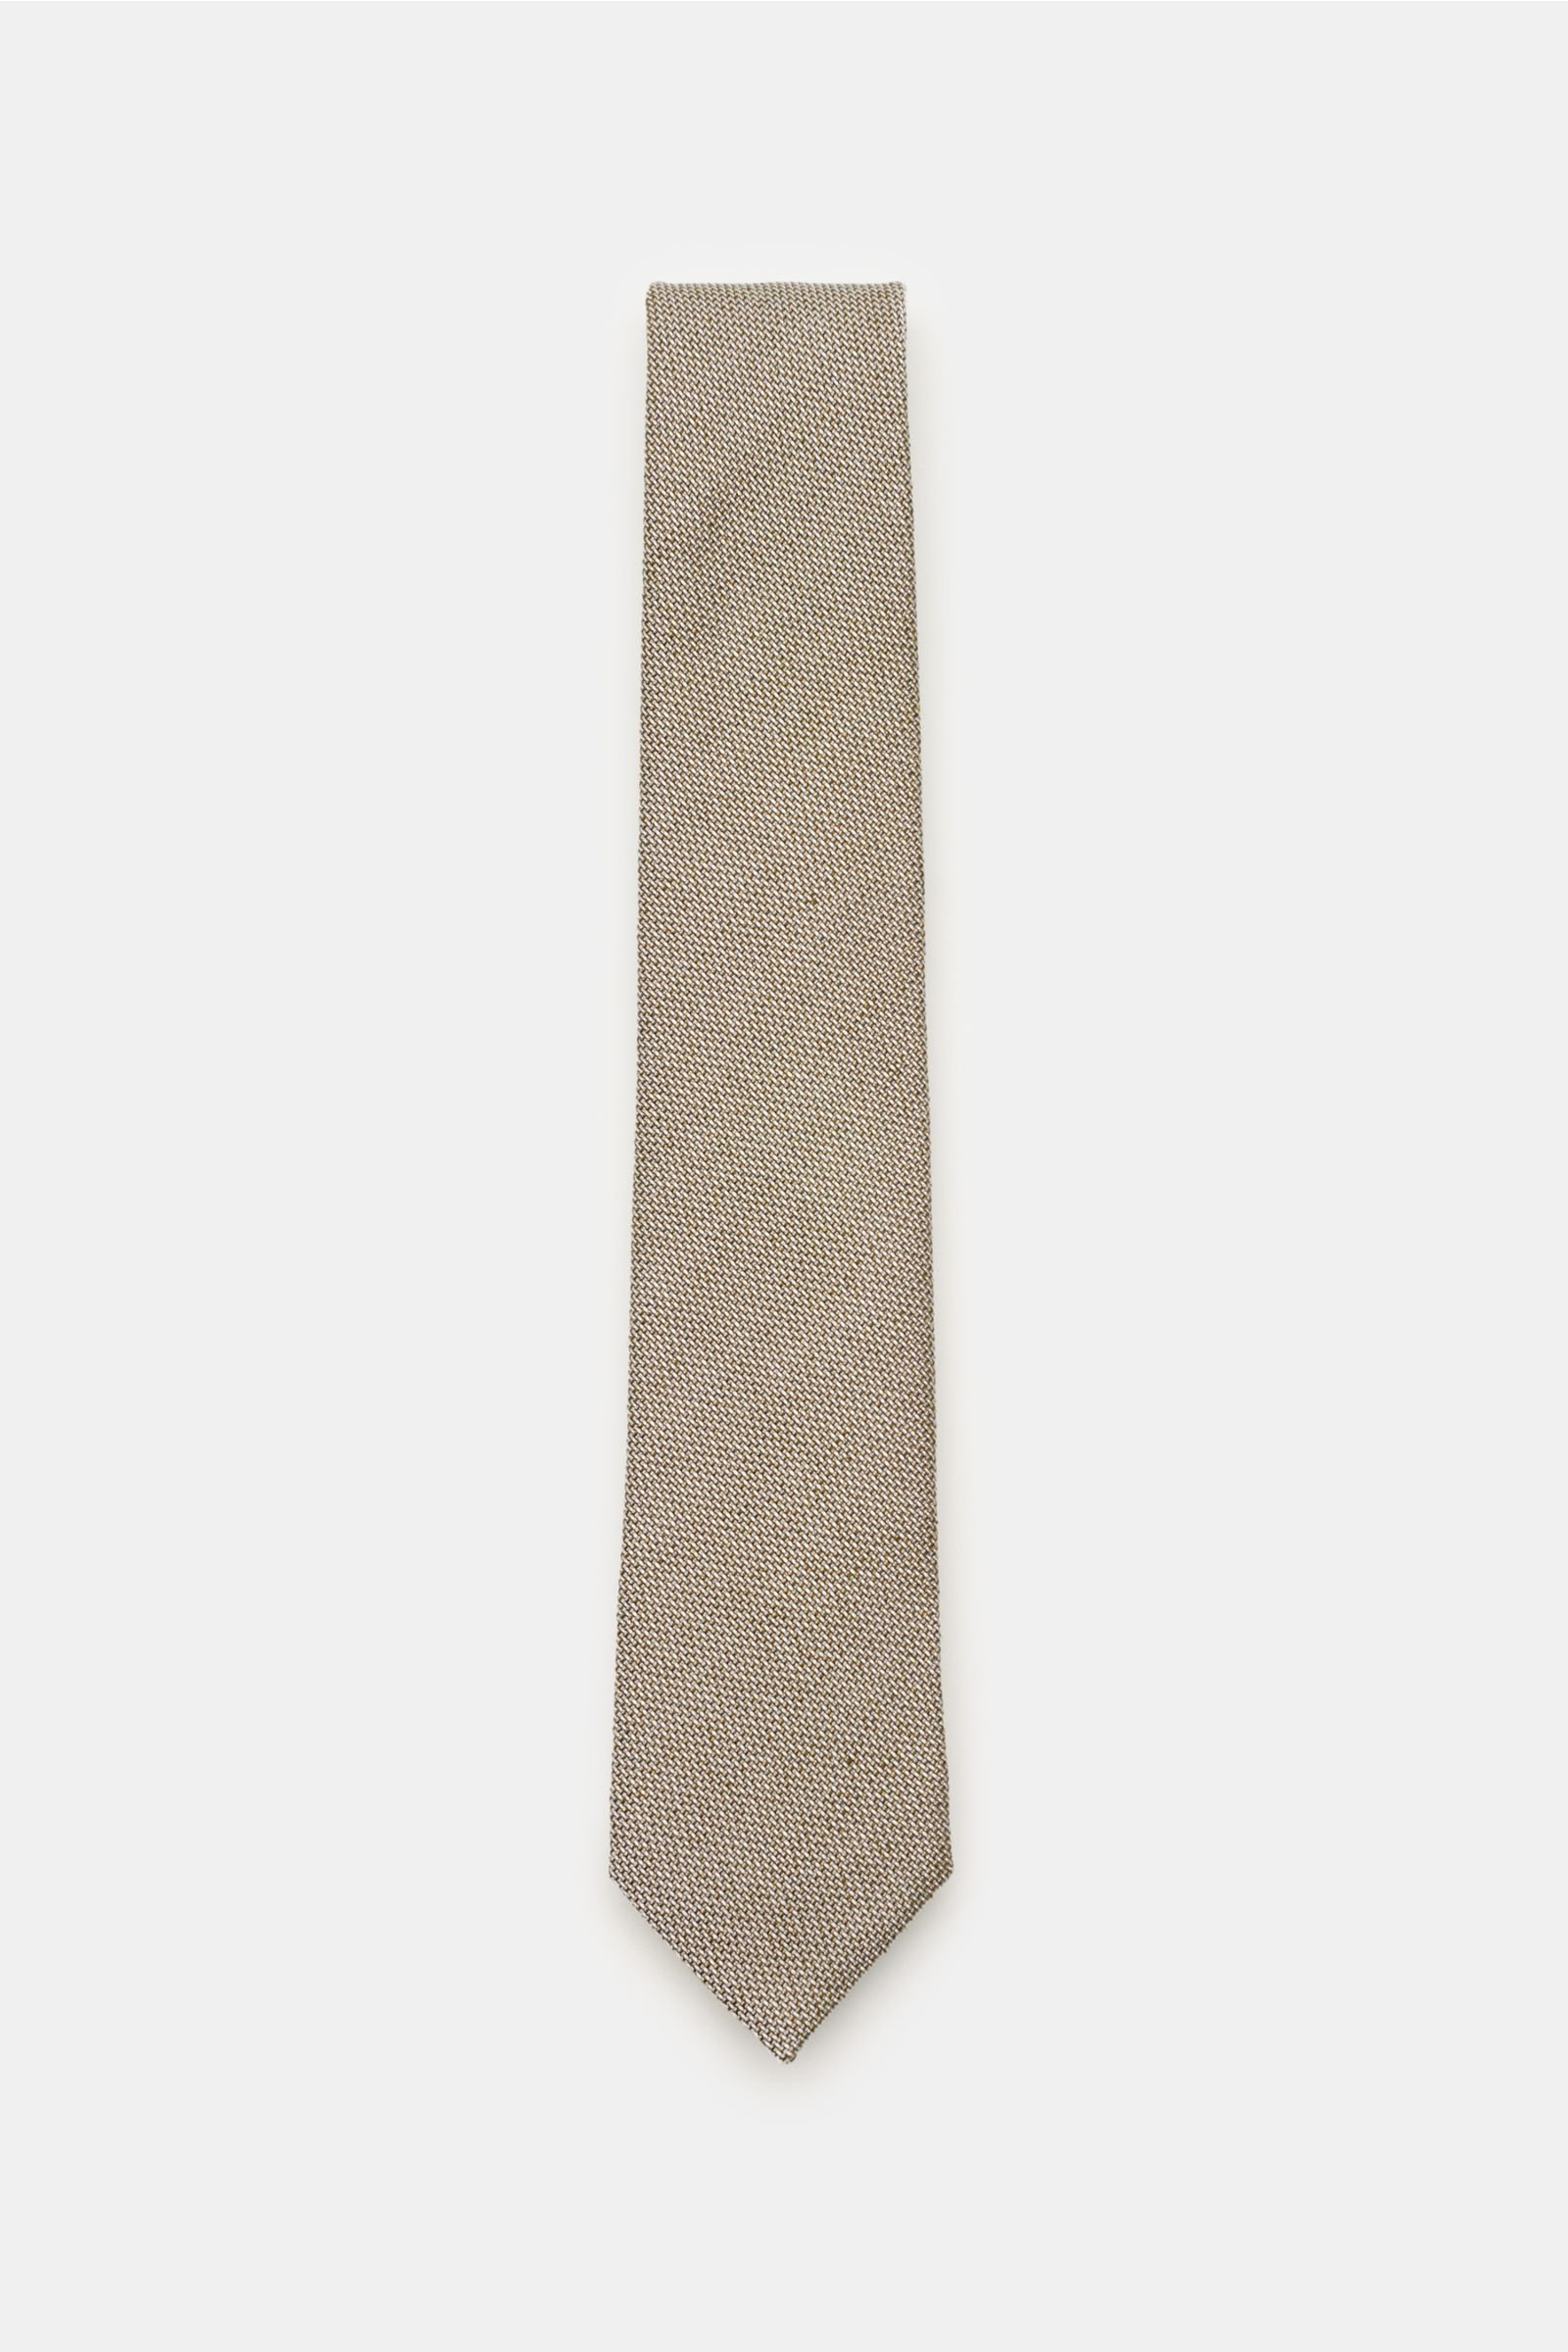 Tie grey-green